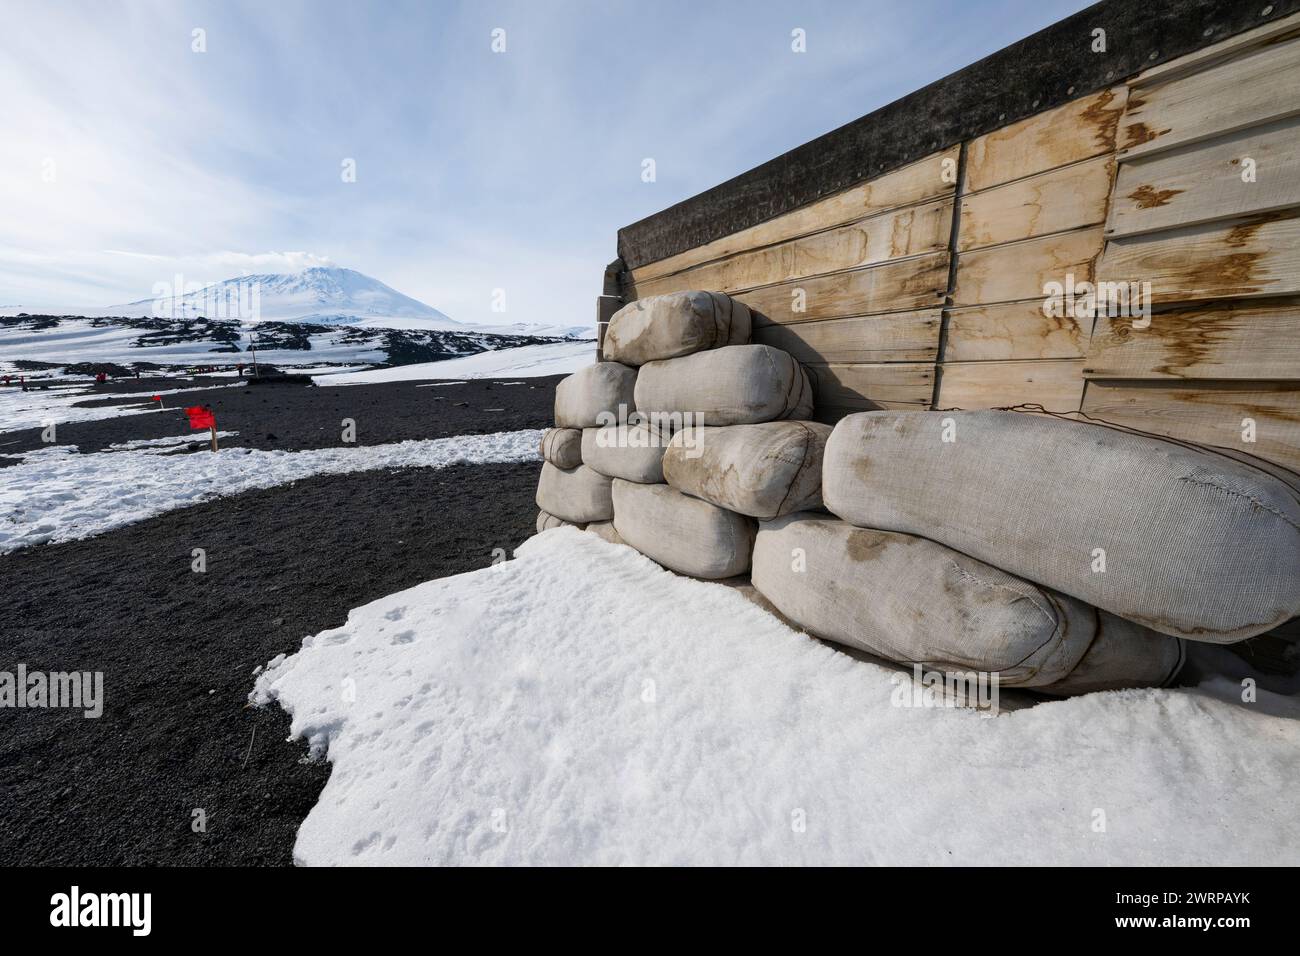 Antarctique, mer de Ross, île de Ross, Cap Evans. Scott's Hut, utilisé lors de l'expédition Terra Nova (1910-1913). Montez Erebus au loin. Banque D'Images